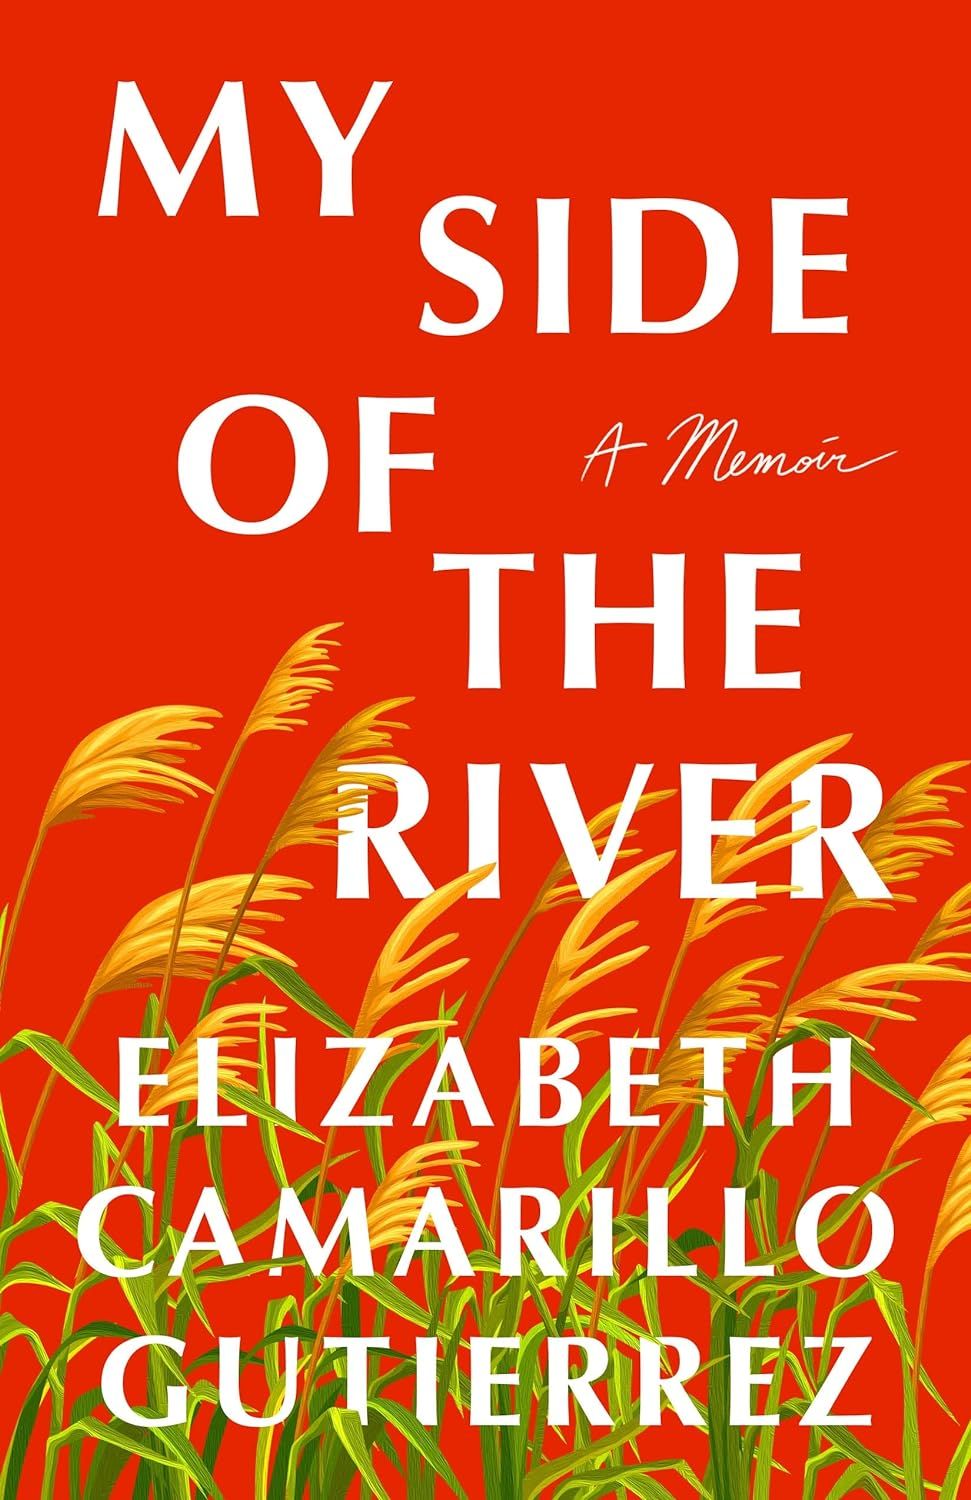  A Memoir by Elizabeth Camarillo Gutierrez